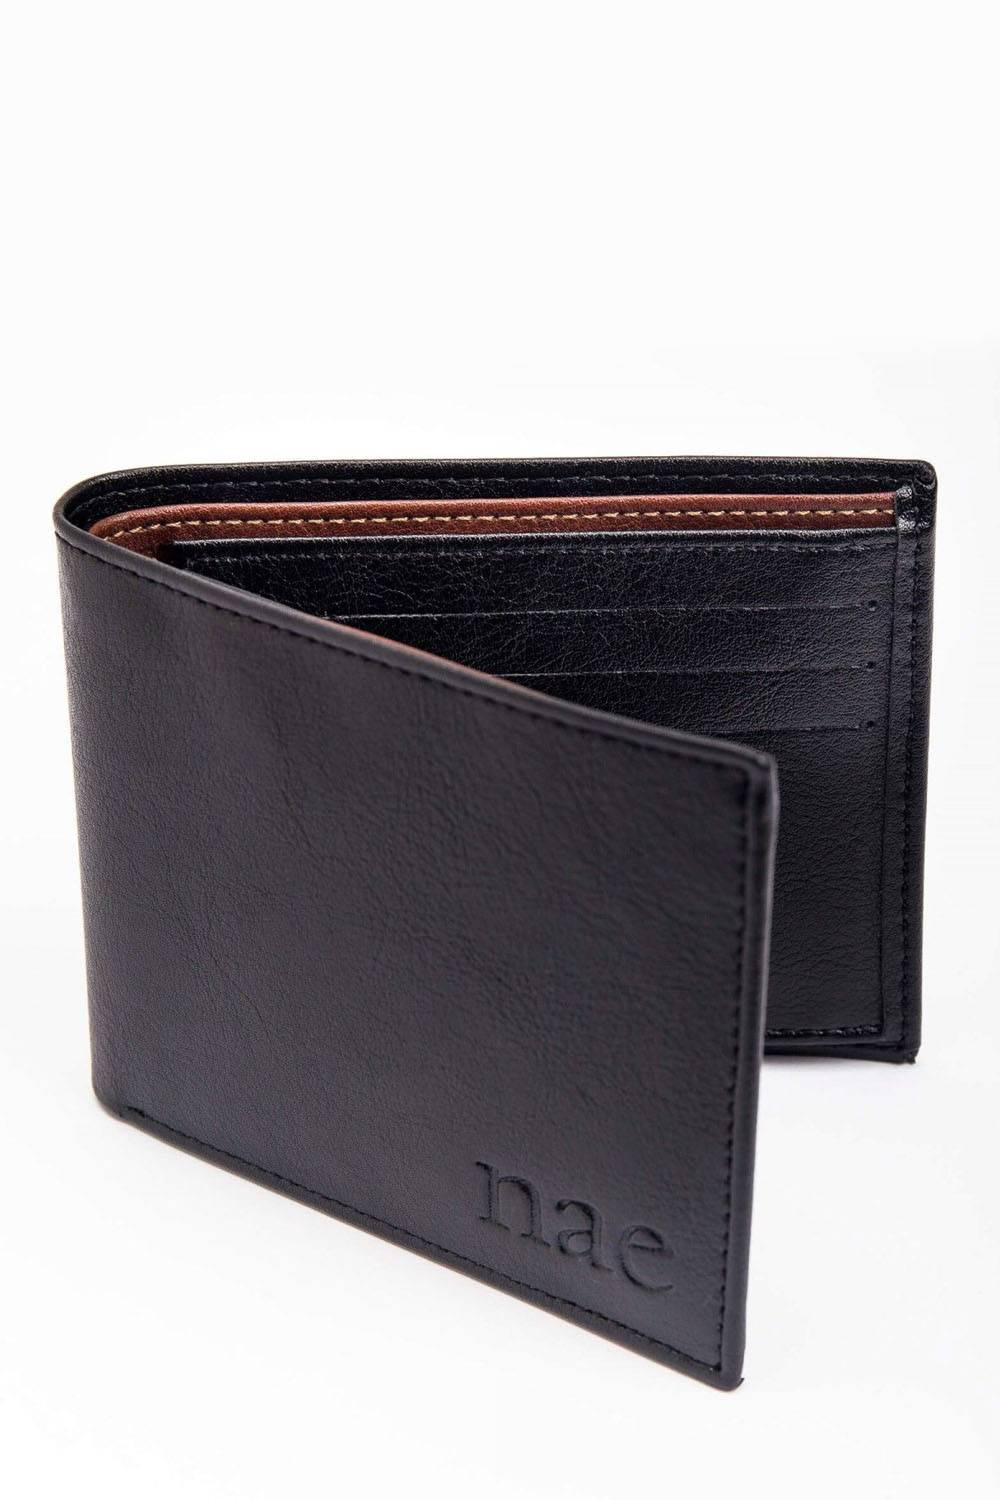 nae luxury vegan leather wallet